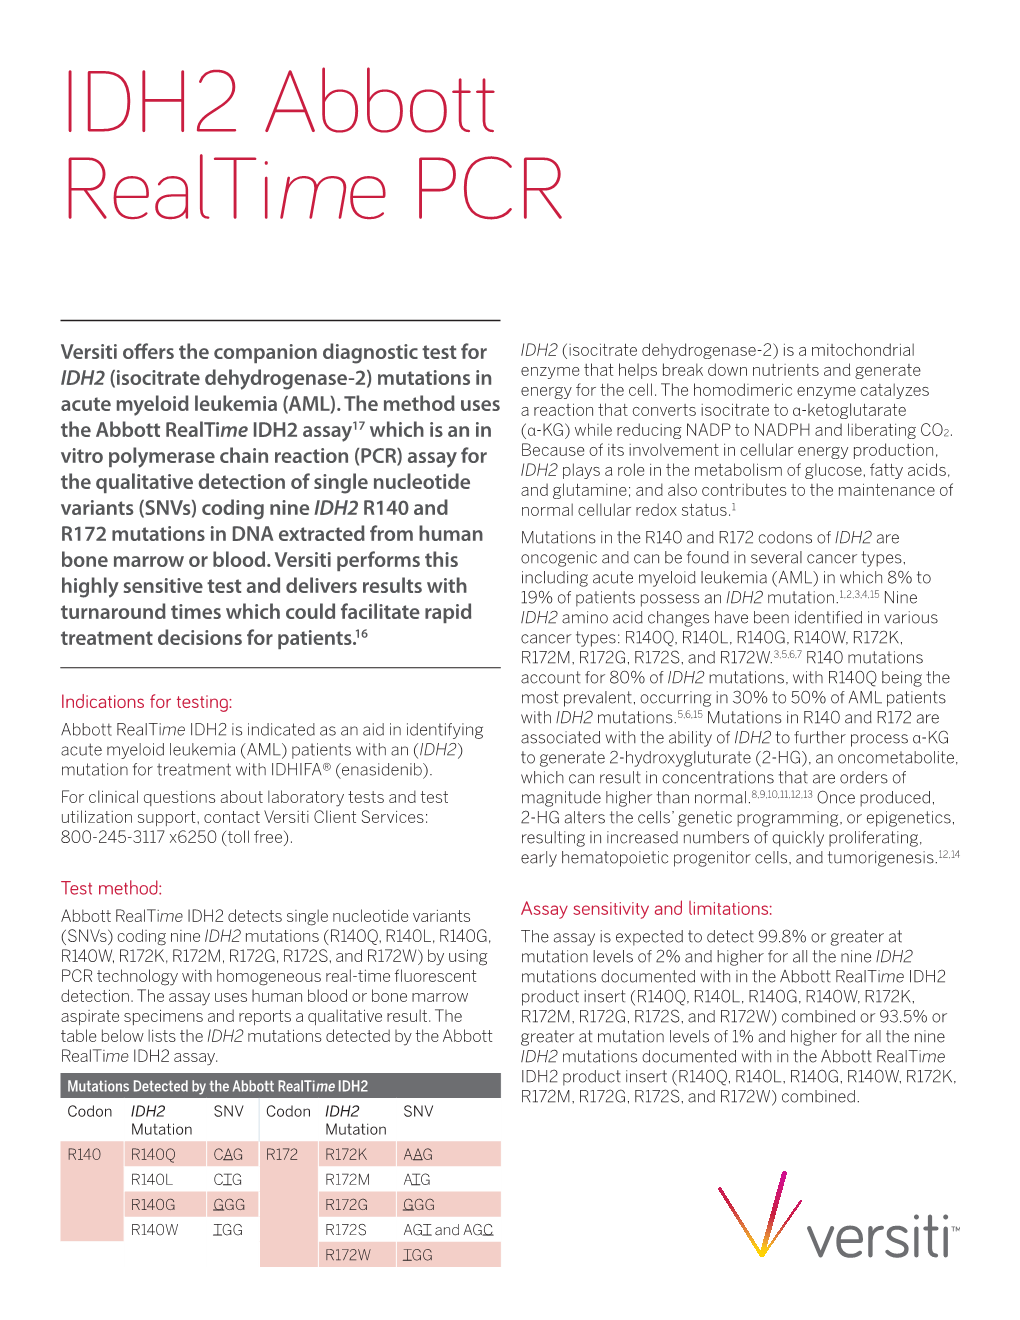 IDH2 Abbott Realtime PCR Diagnostic Test